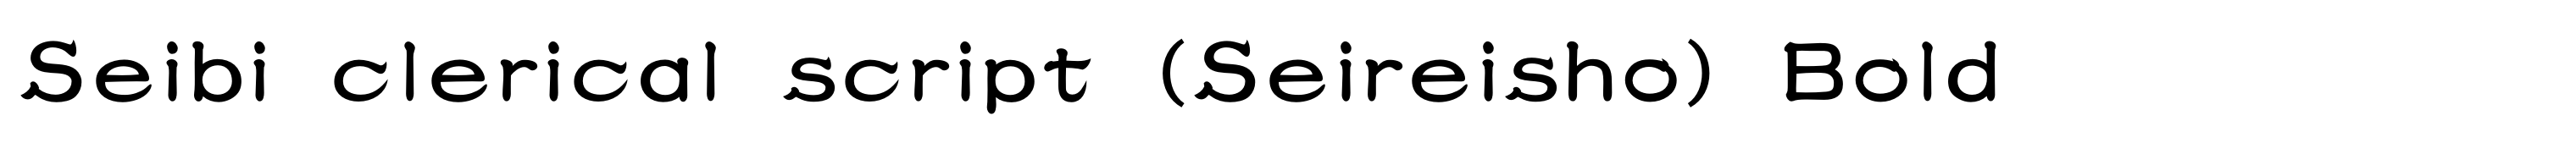 Seibi clerical script (Seireisho) Bold